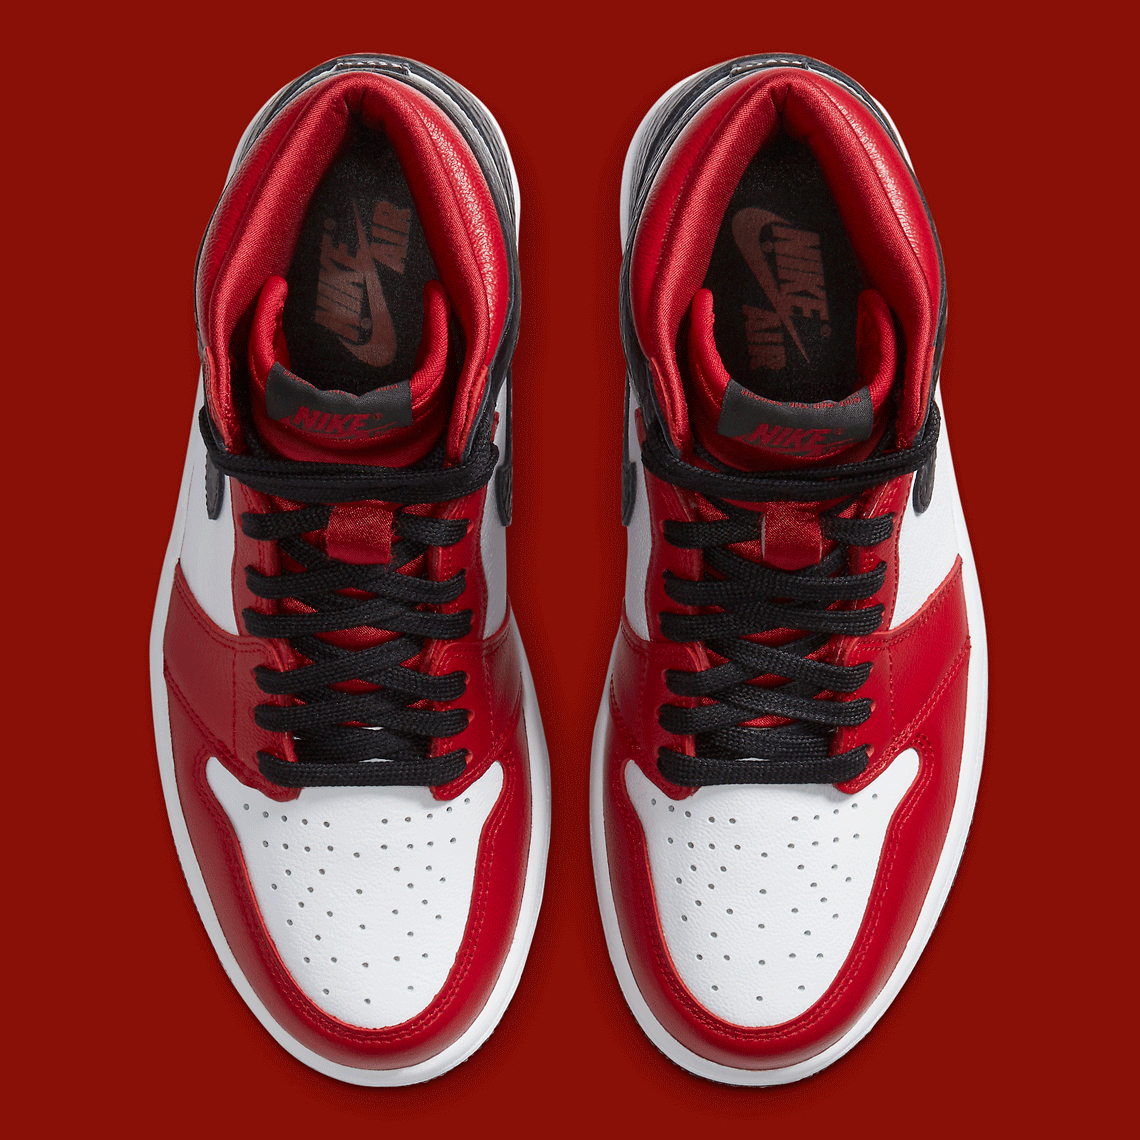 Air Jordan 1 Retro High OG Snakeskin CD0461-601 | SneakerNews.com